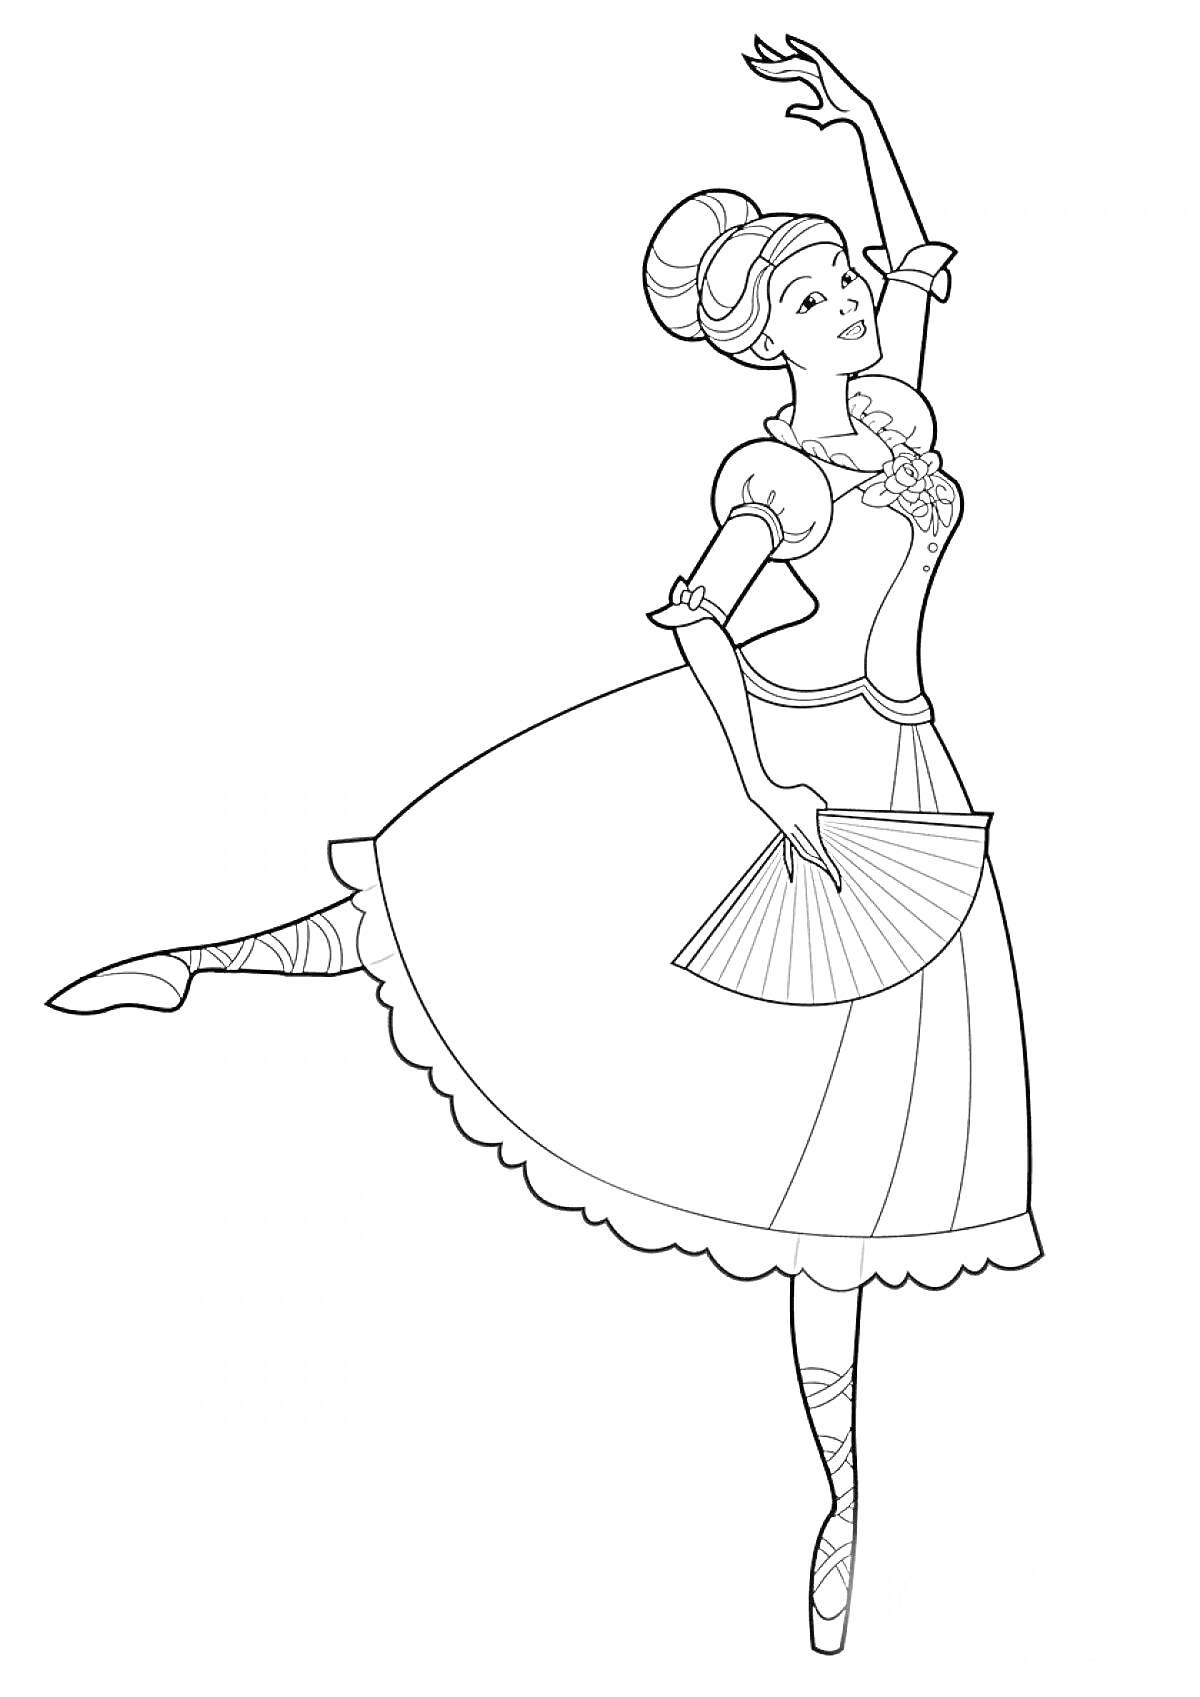 Балерина в классическом платье с веером, танцует на пуантах